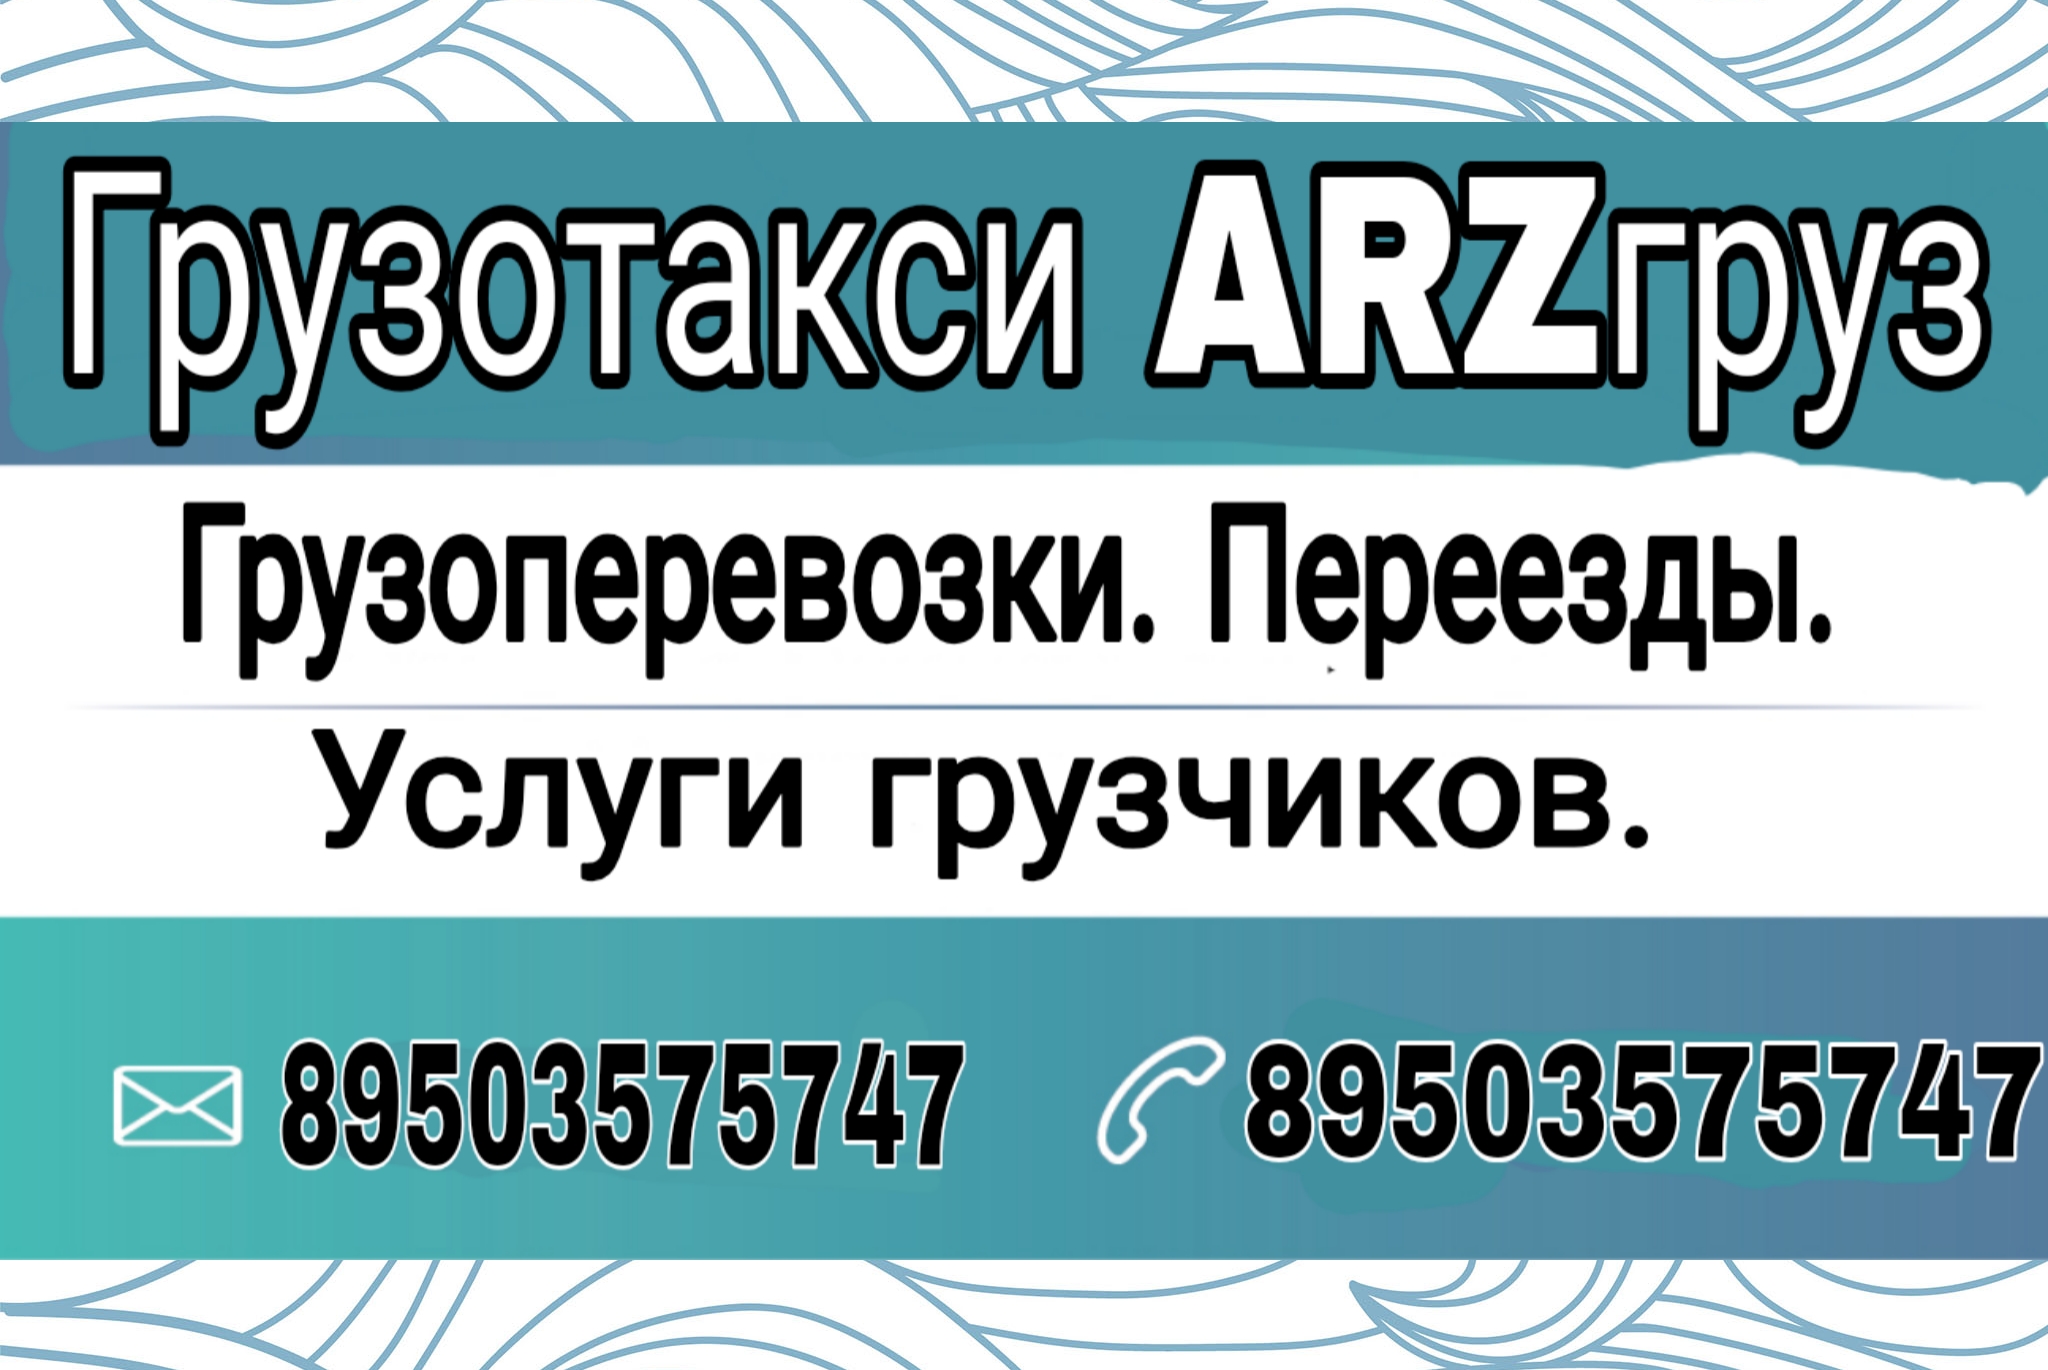 Arzгруз: Переезды, грузоперевозки, услуги грузчиков в Арзамасе - фотография